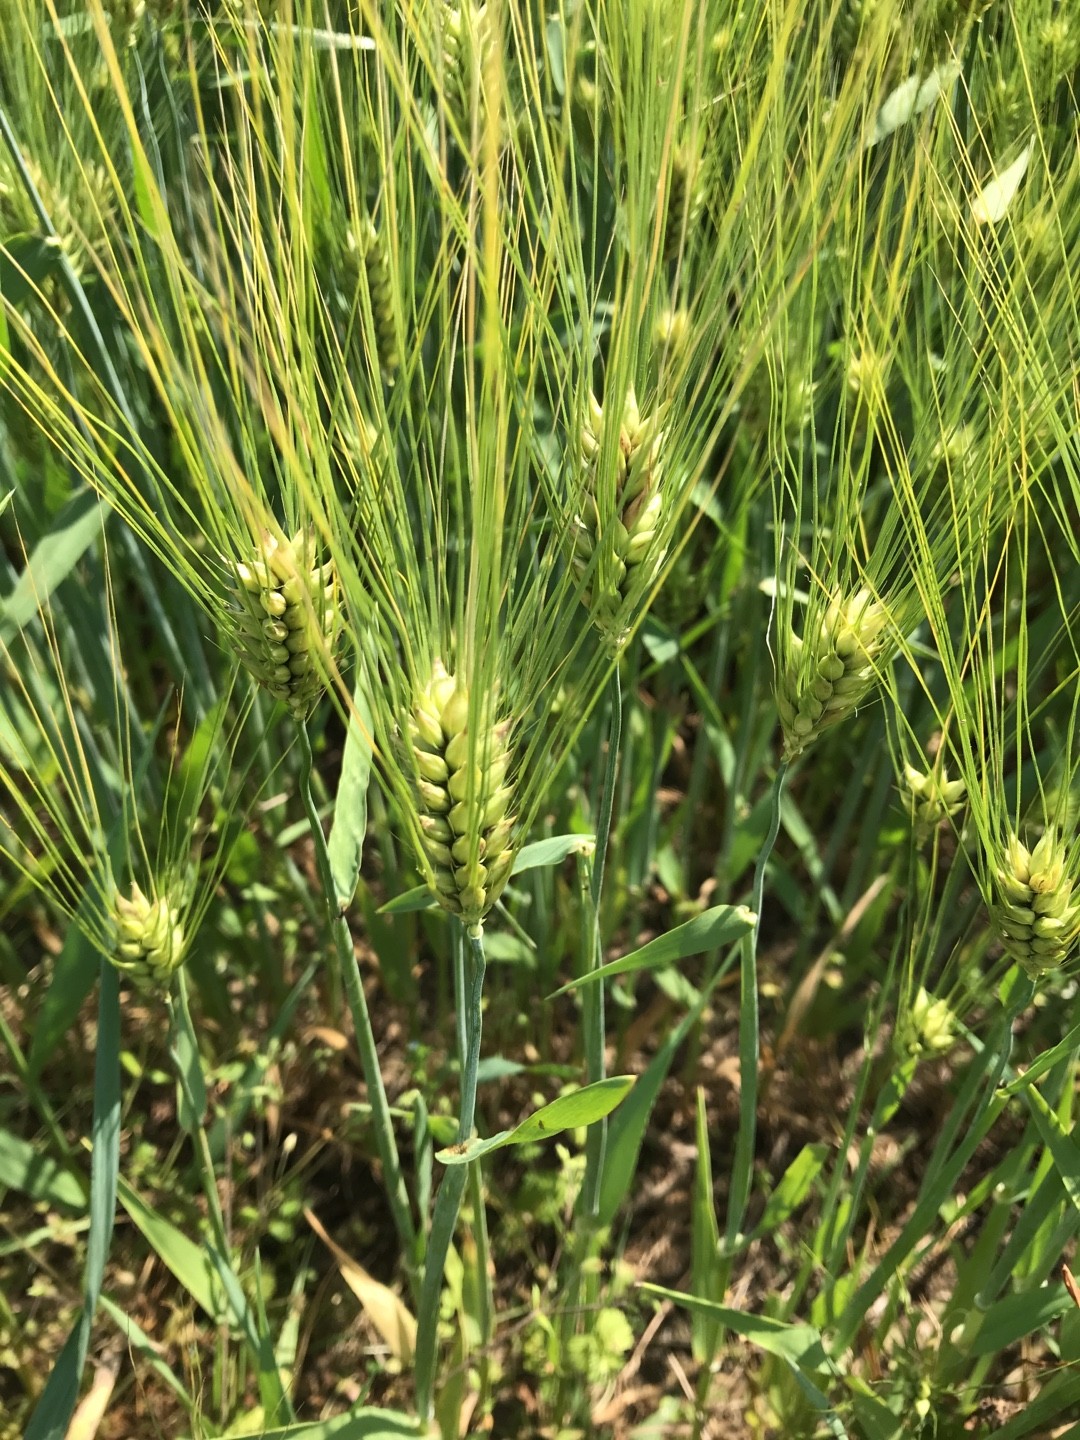 Barley (Hordeum vulgare) Care, - PictureThis